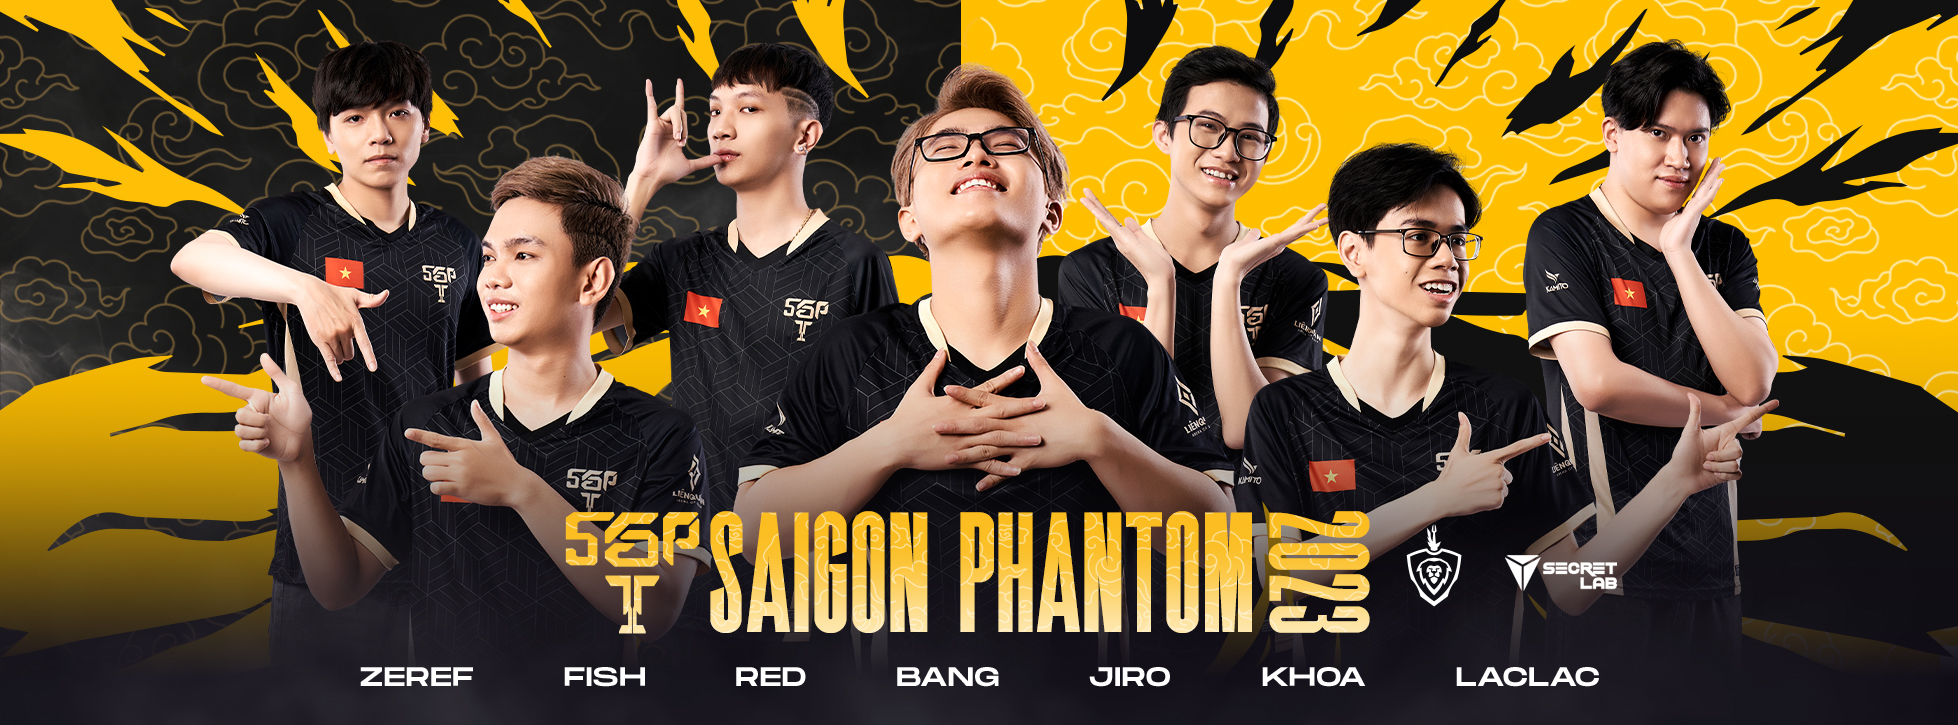 Saigon Phantom là Đội tuyển xuất sắc nhất - nguồn: Facebook